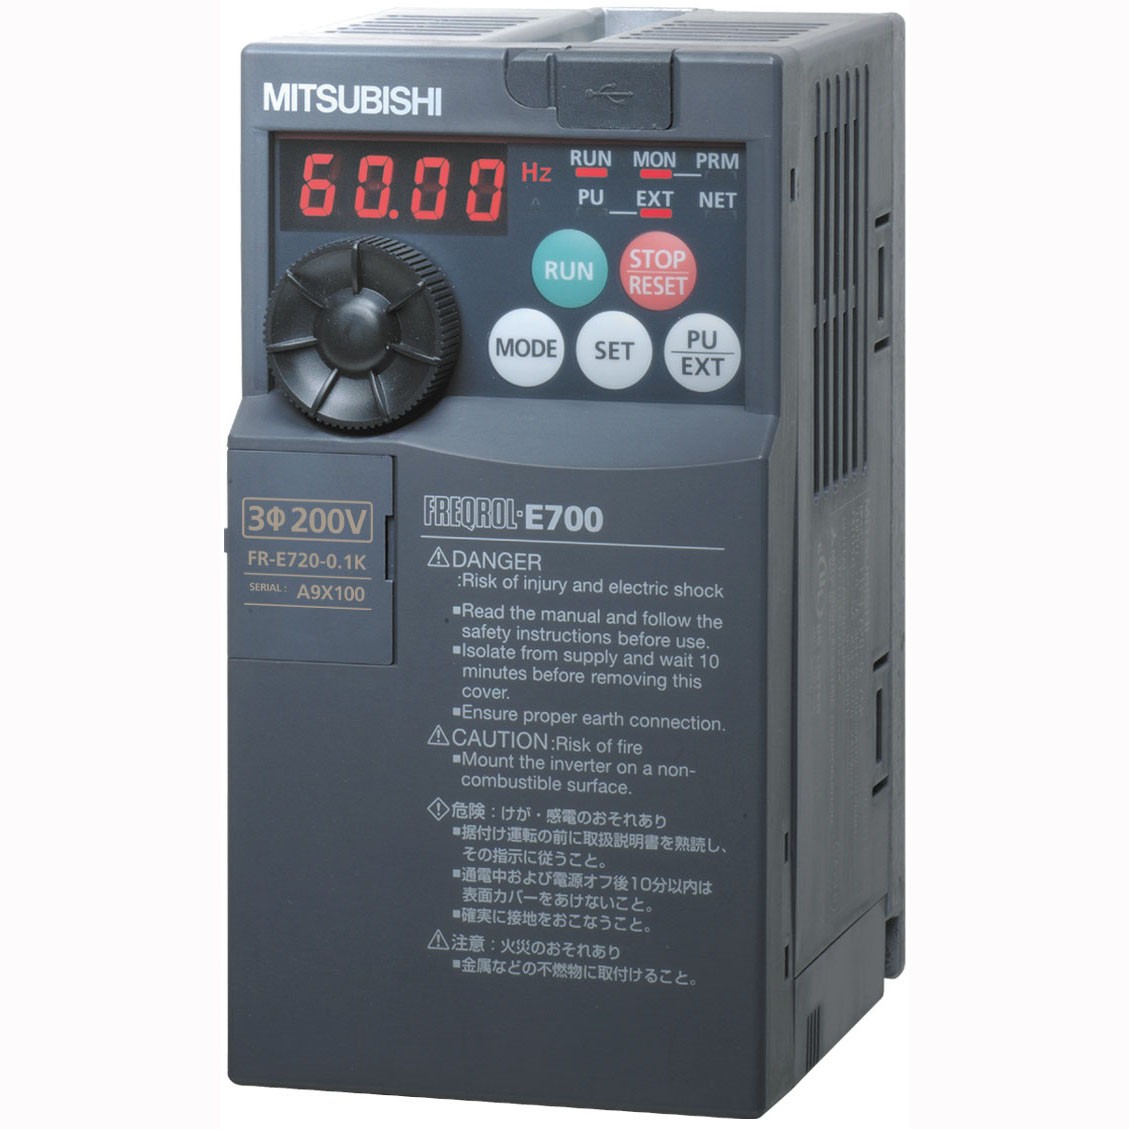  FR-E740-1.5K-CHT 三菱变频器FR-E740-1.5K-CHT价格好 3相400V电源1.5kW经济型